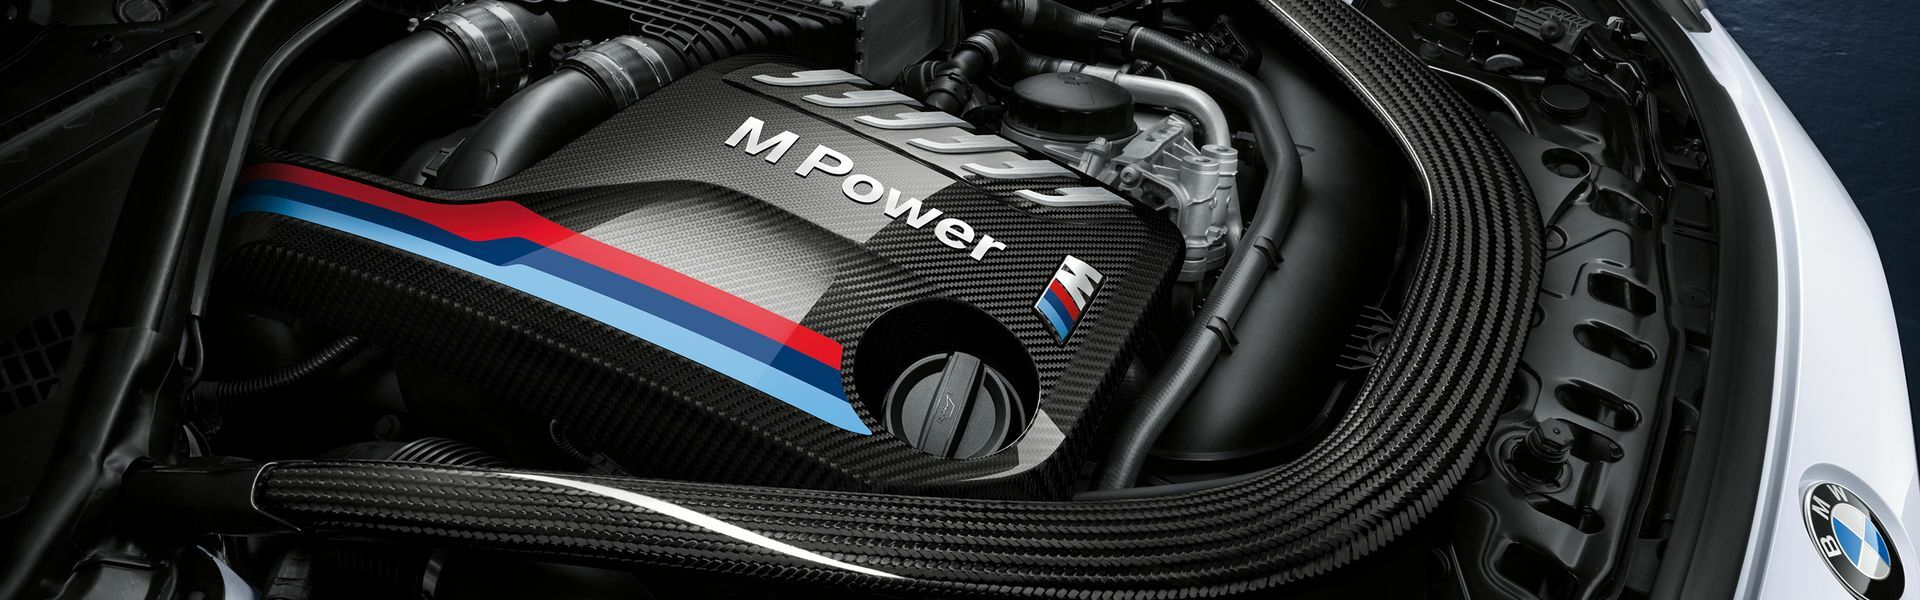 Zvýšení výkonu/ Softwarové úpravy/ Drobné performance díly pro automobil Porsche Panamera S 970